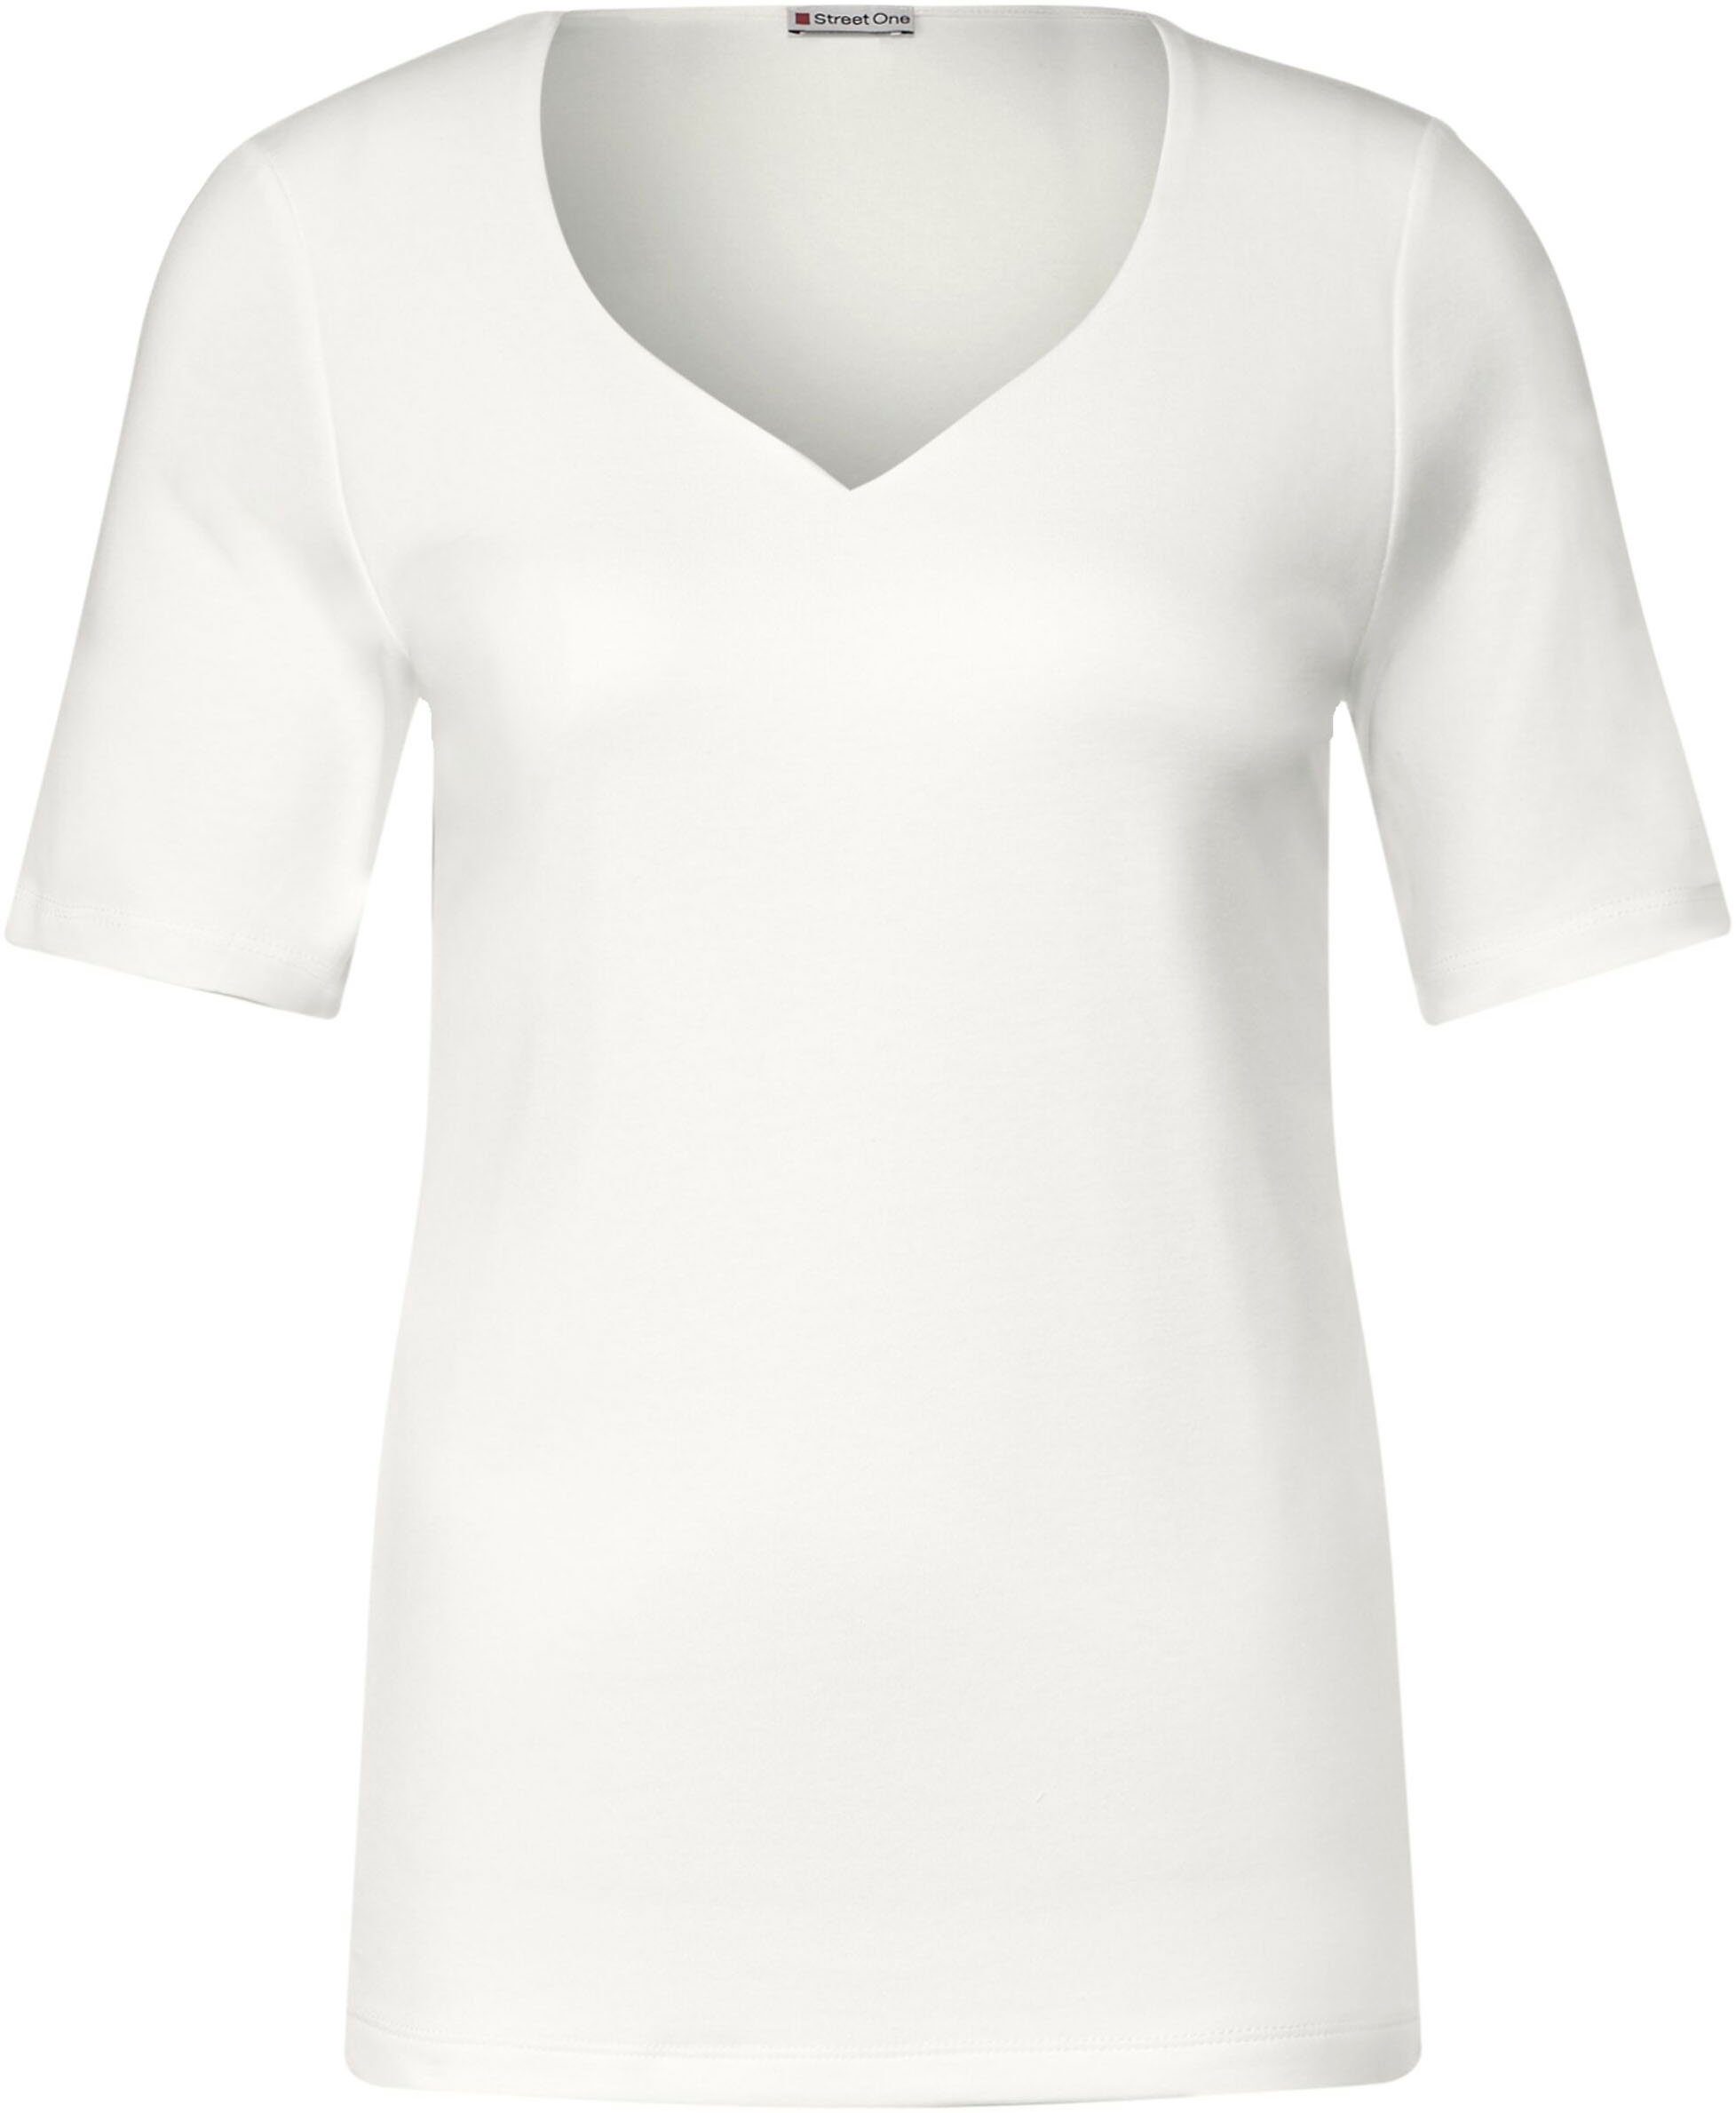 STREET ONE T-Shirt mit Herz-Ausschnitt off white